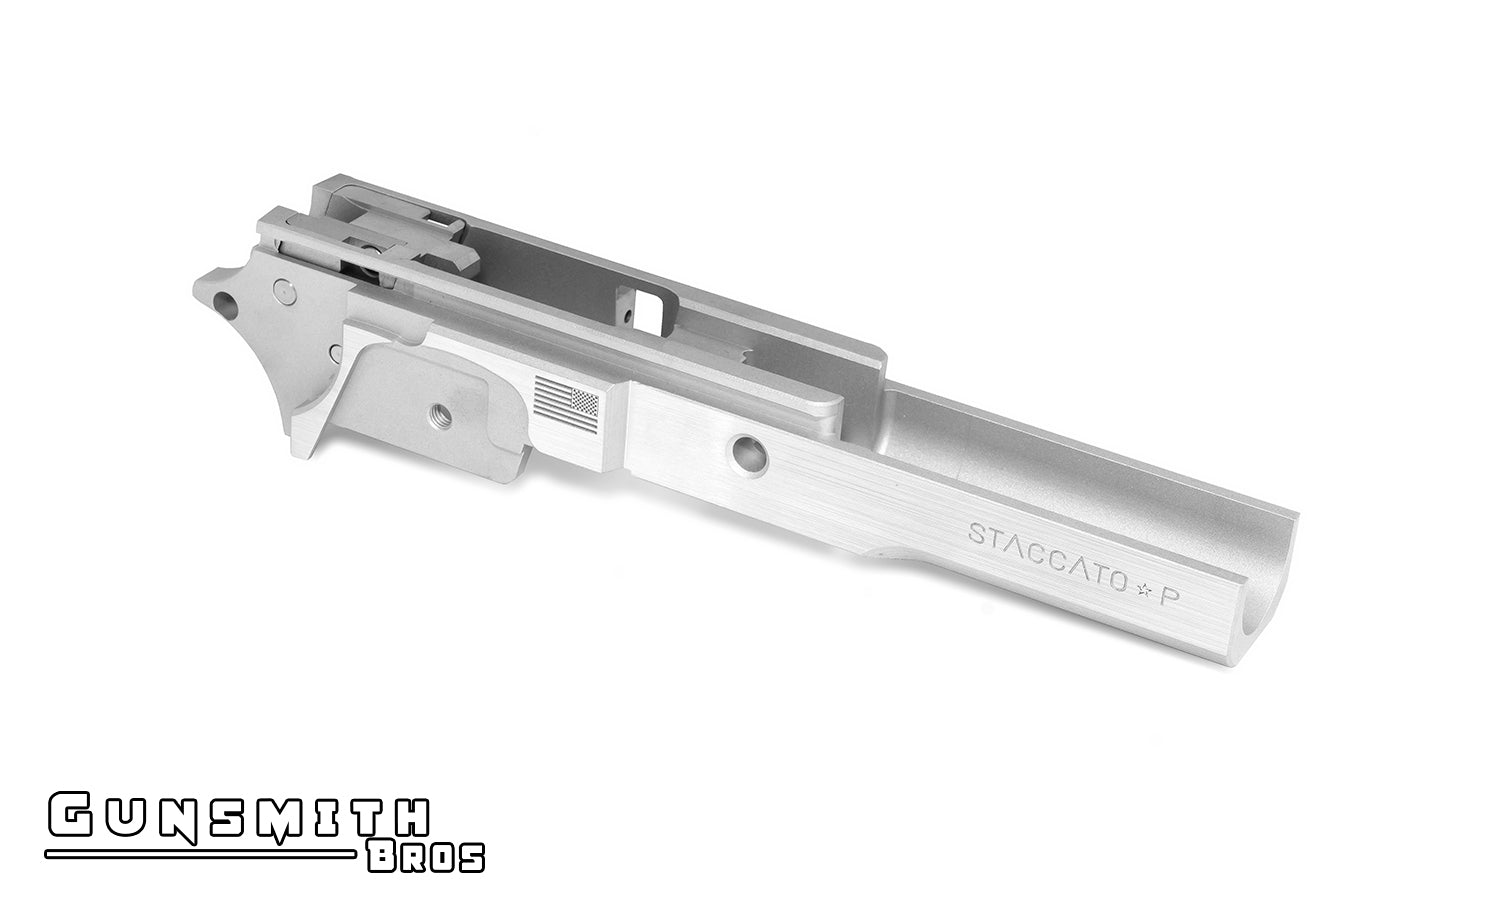 Gunsmith Bros Staccato 3.9 Aluminum Frame for Hi-CAPA